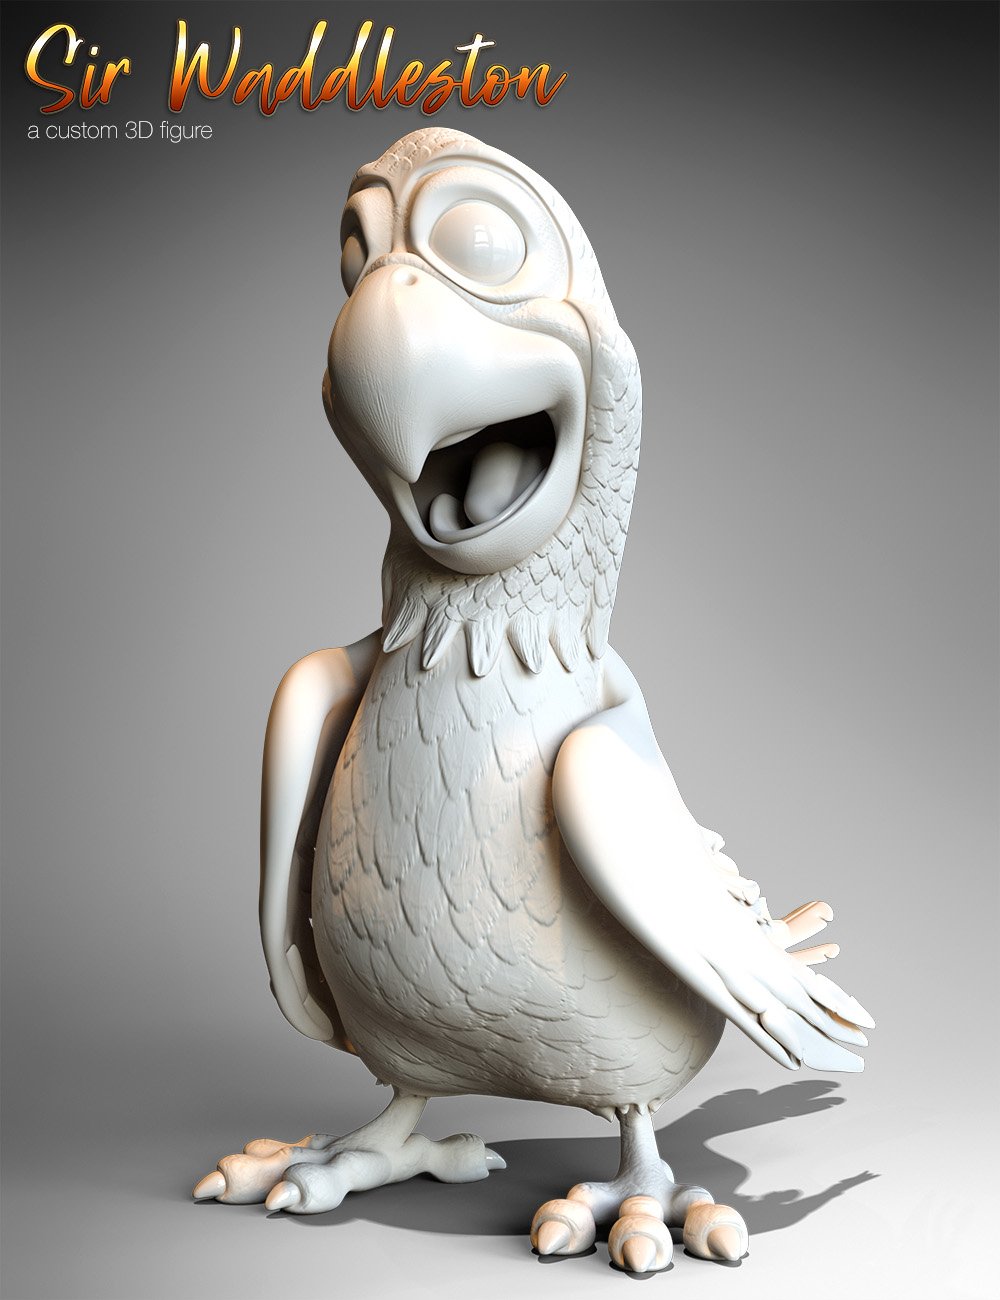 Cartoon Parrot for Daz Studio by: 3D Universe, 3D Models by Daz 3D